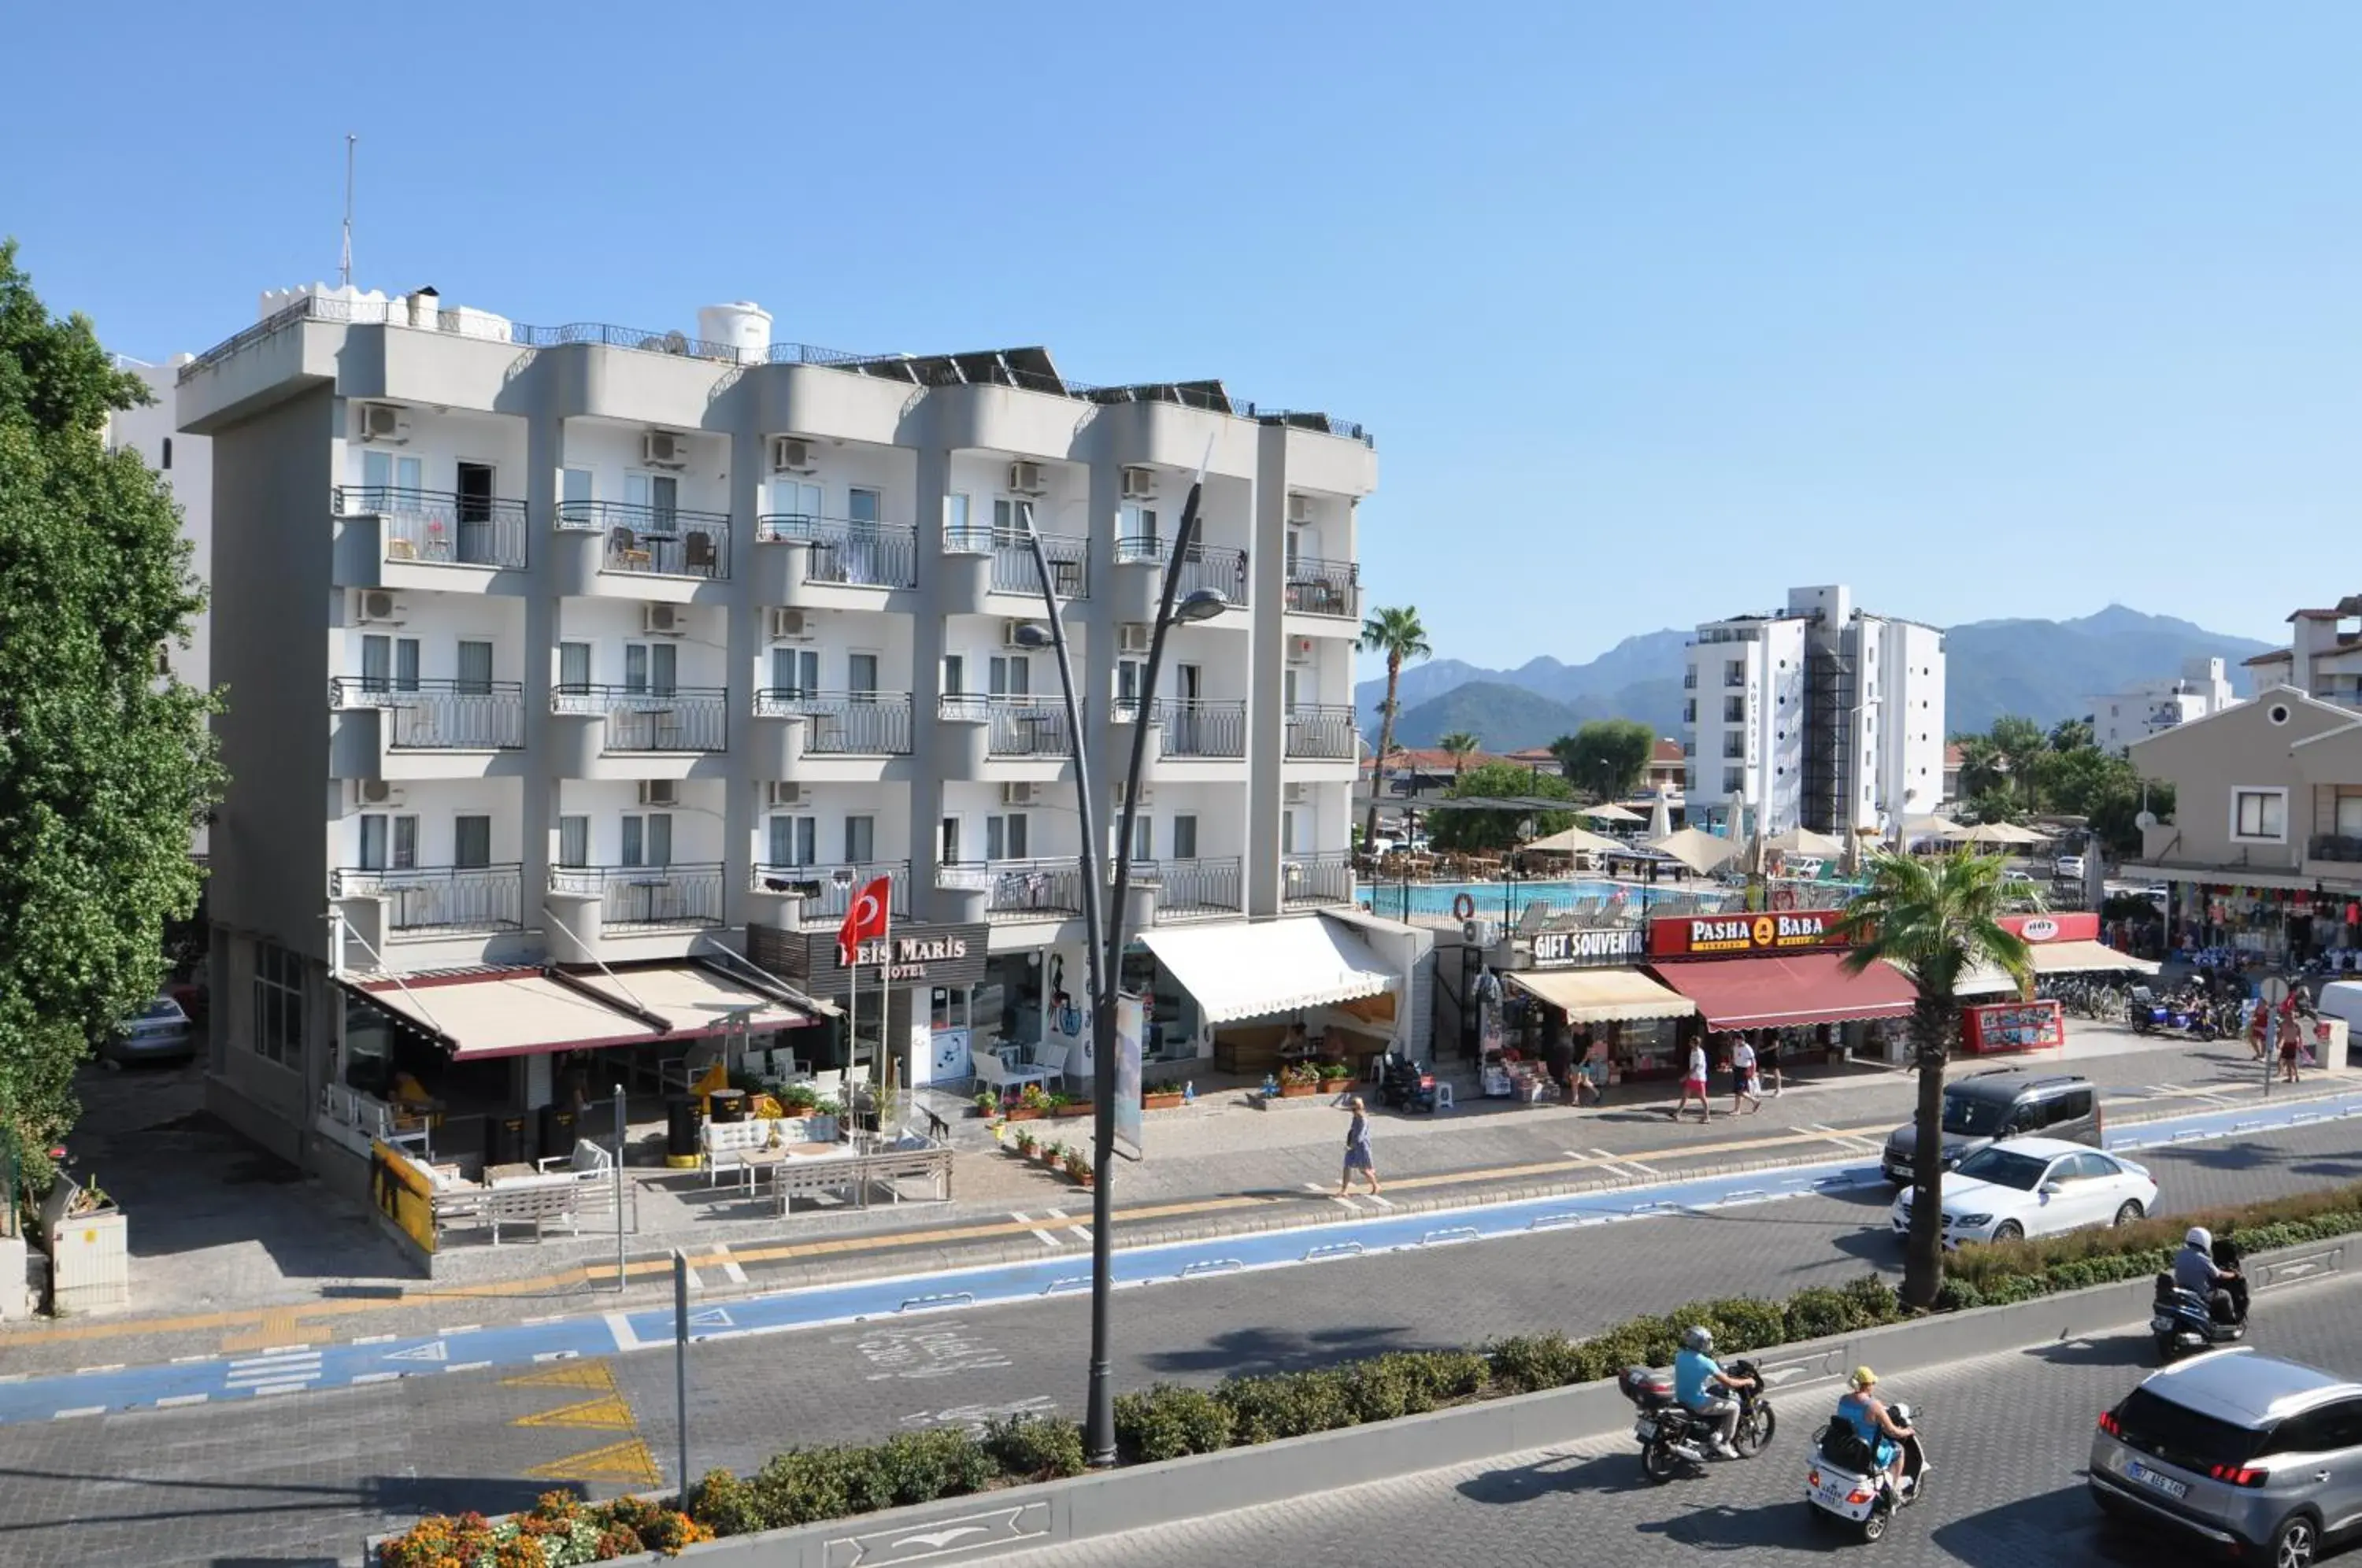 Street view in Reis Maris Hotel